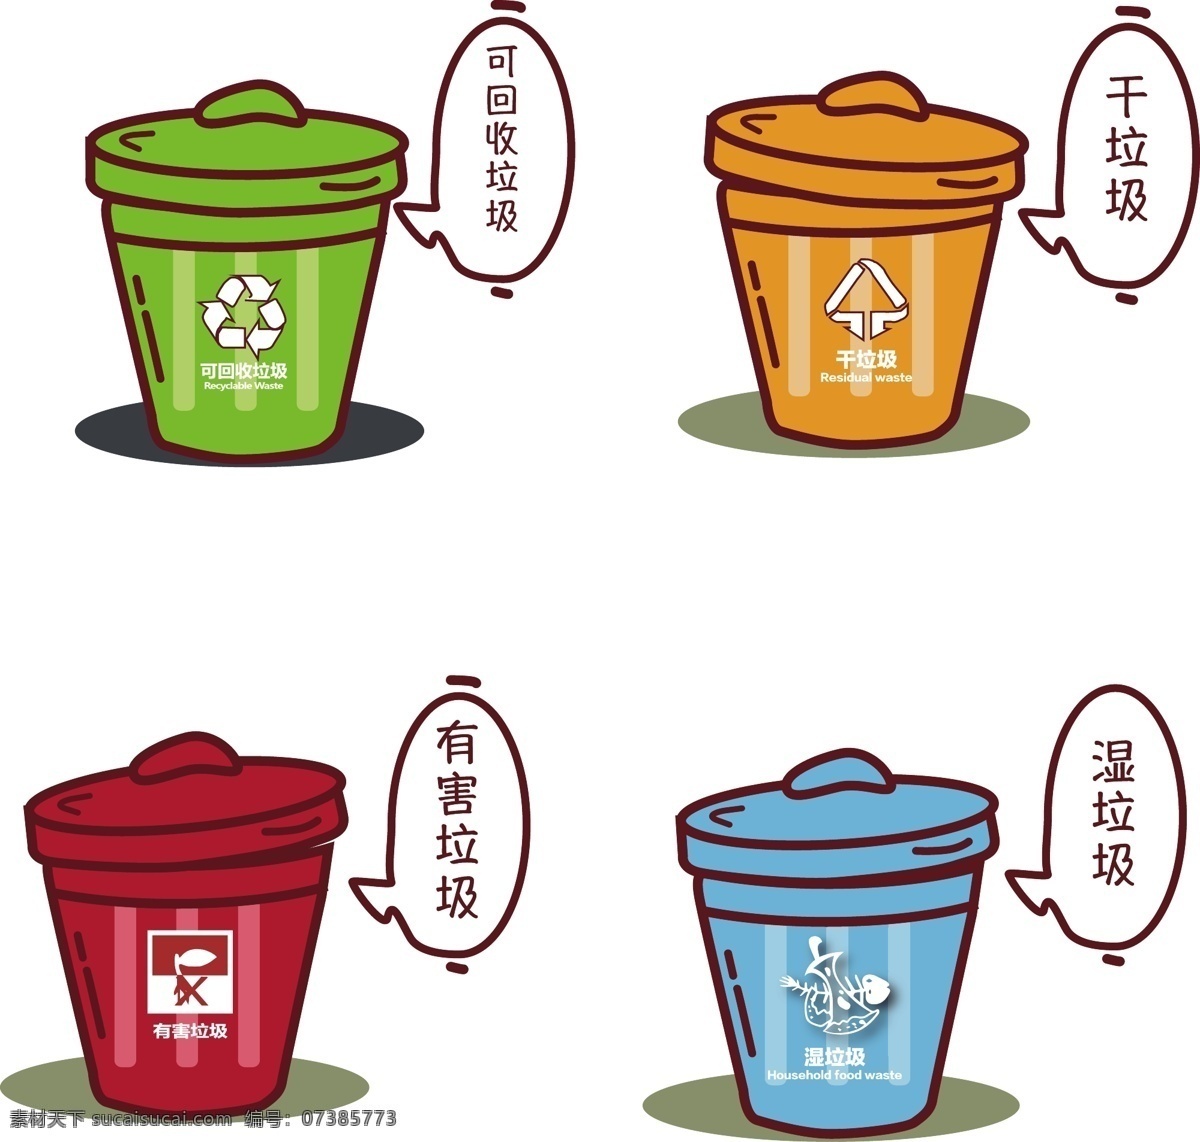 垃圾分类 卡通垃圾 干垃圾 湿垃圾 可回收垃圾 不可回收 垃圾桶 卡通垃圾桶 鱼骨头 彩色桶 彩色垃圾桶 标志图标 公共标识标志